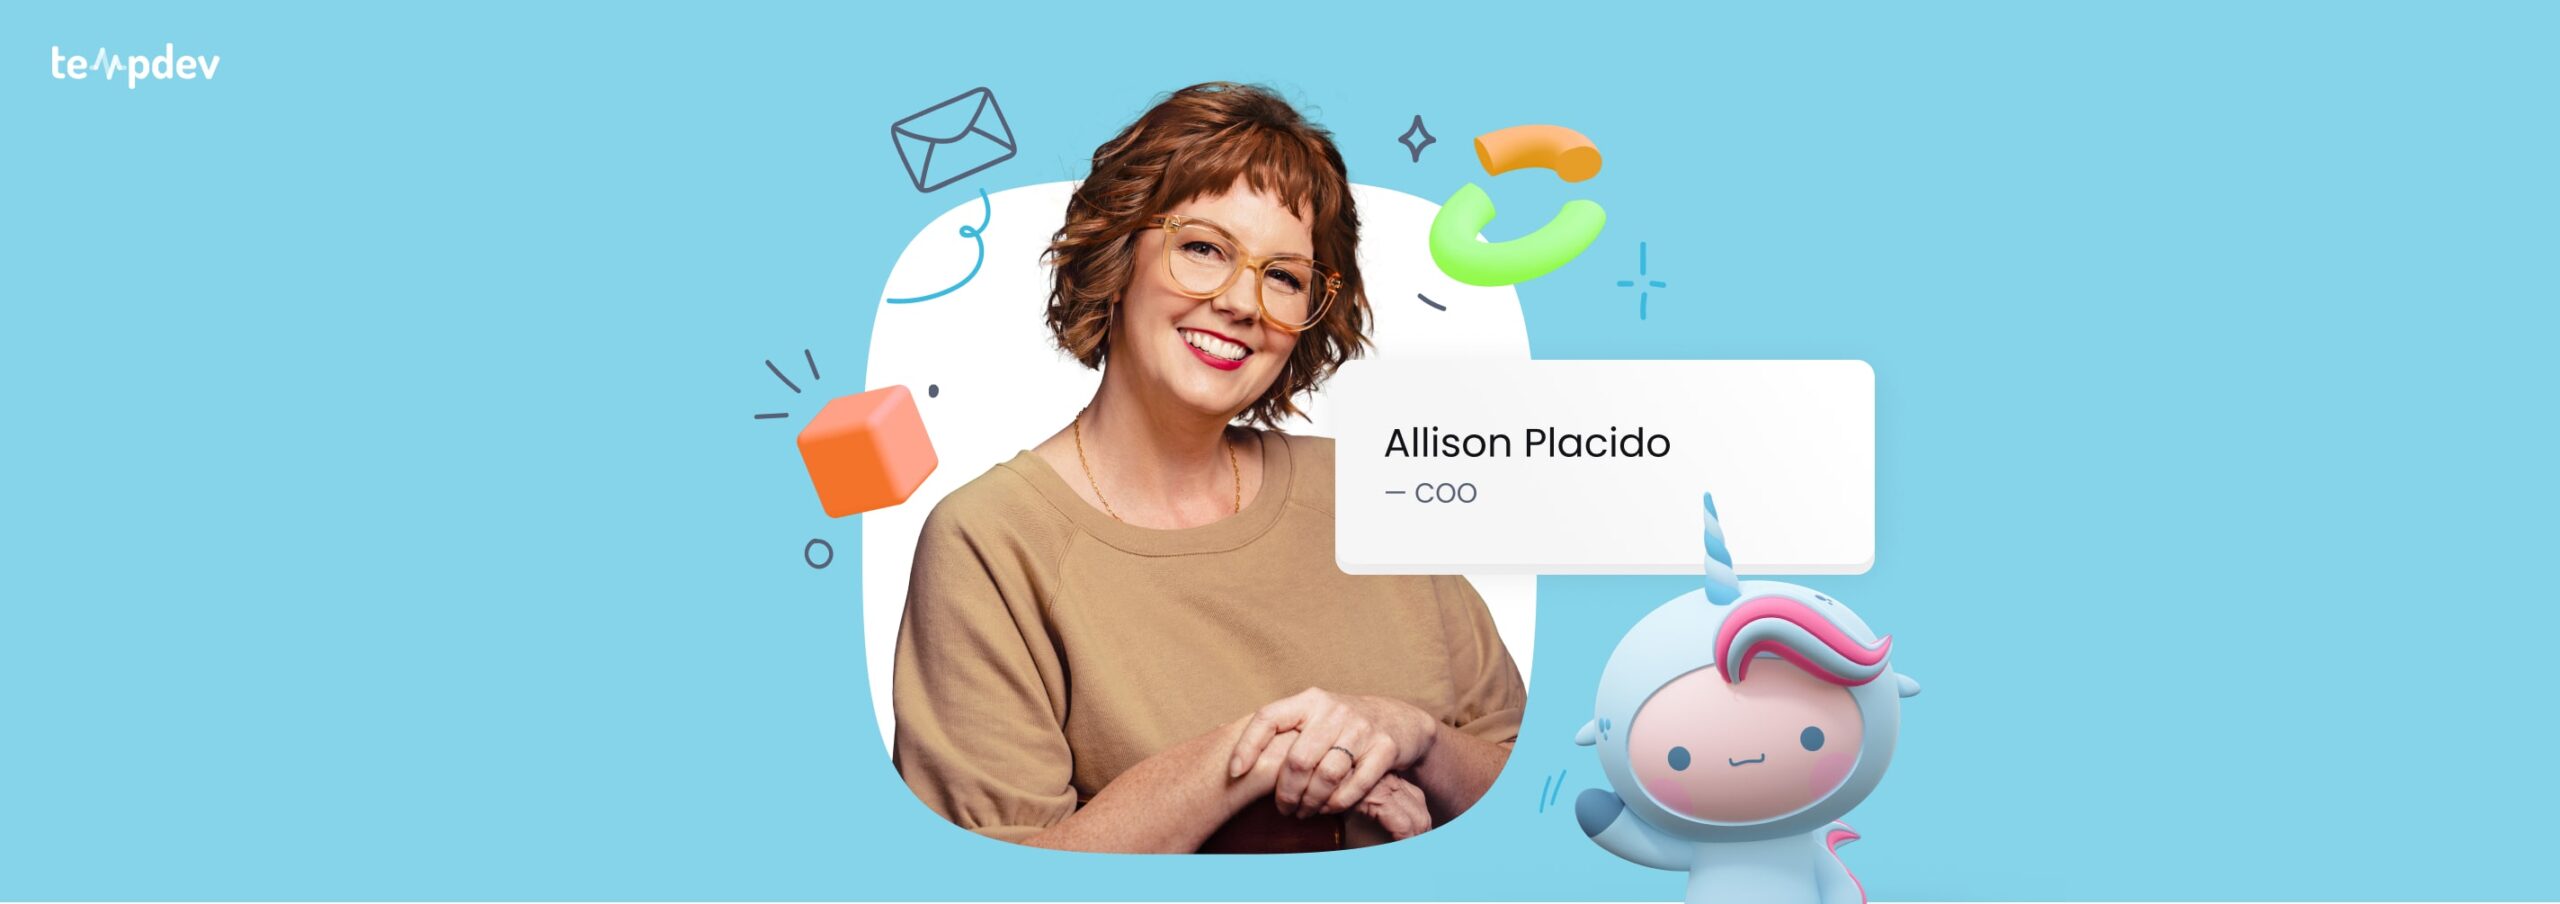 Meet Allison Placido: COO of TempDev